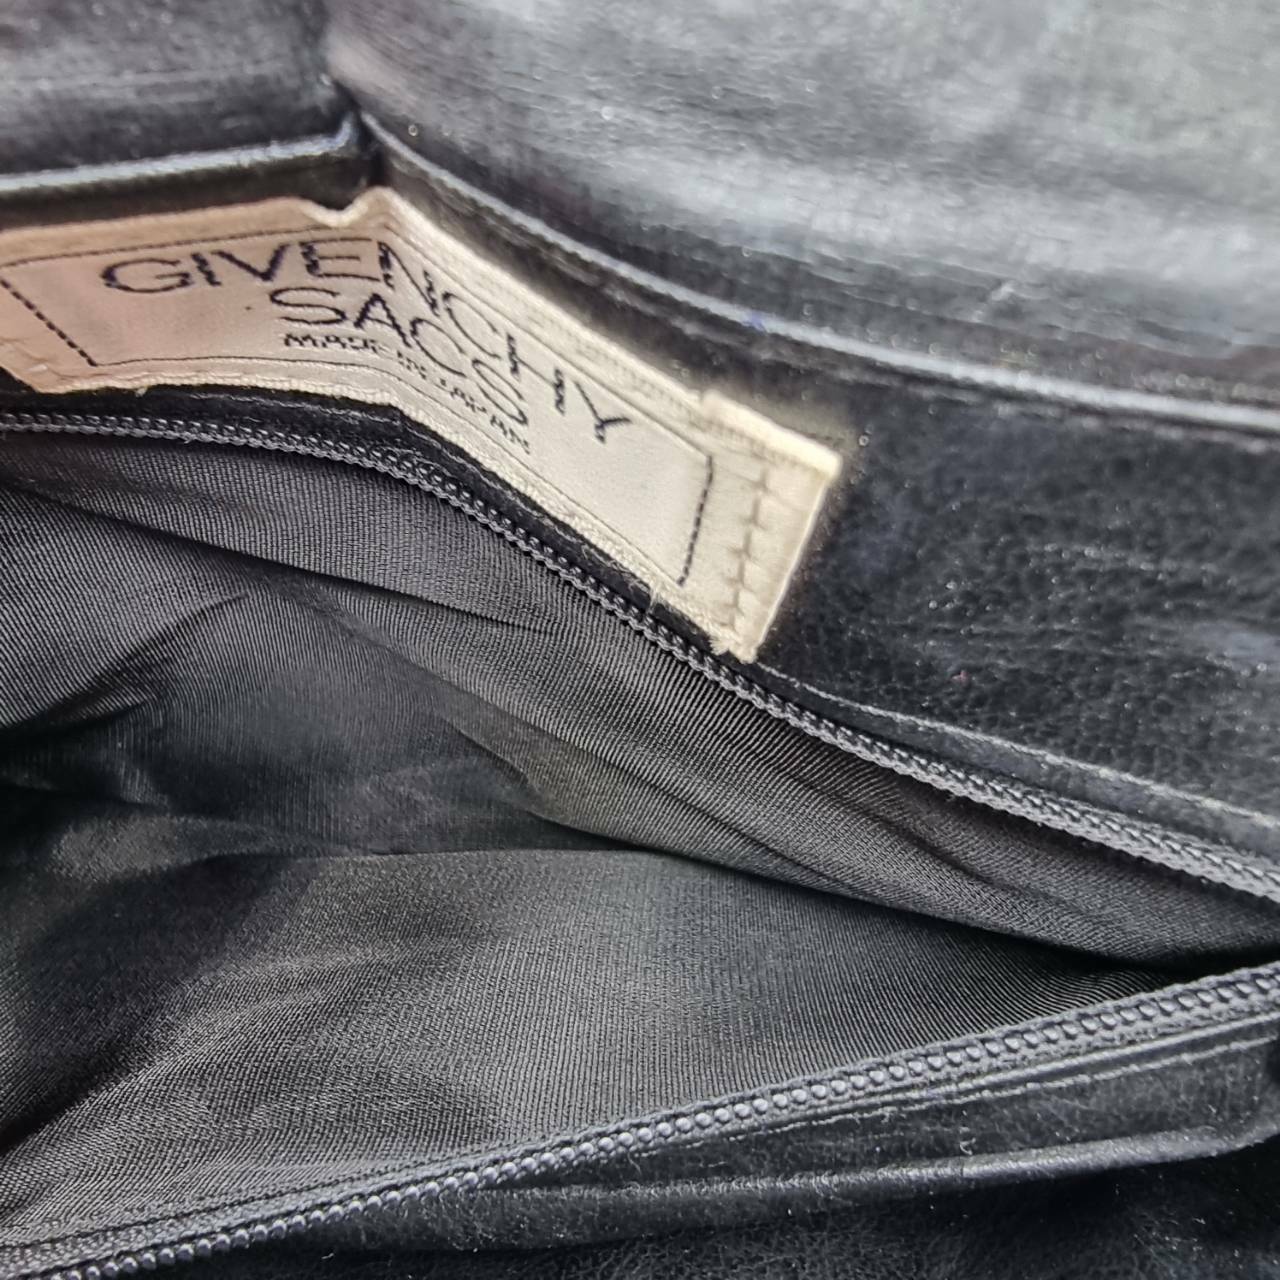 Givenchy Sacs Vintage Shoulder Black Bag Purse Leather Made In Japan